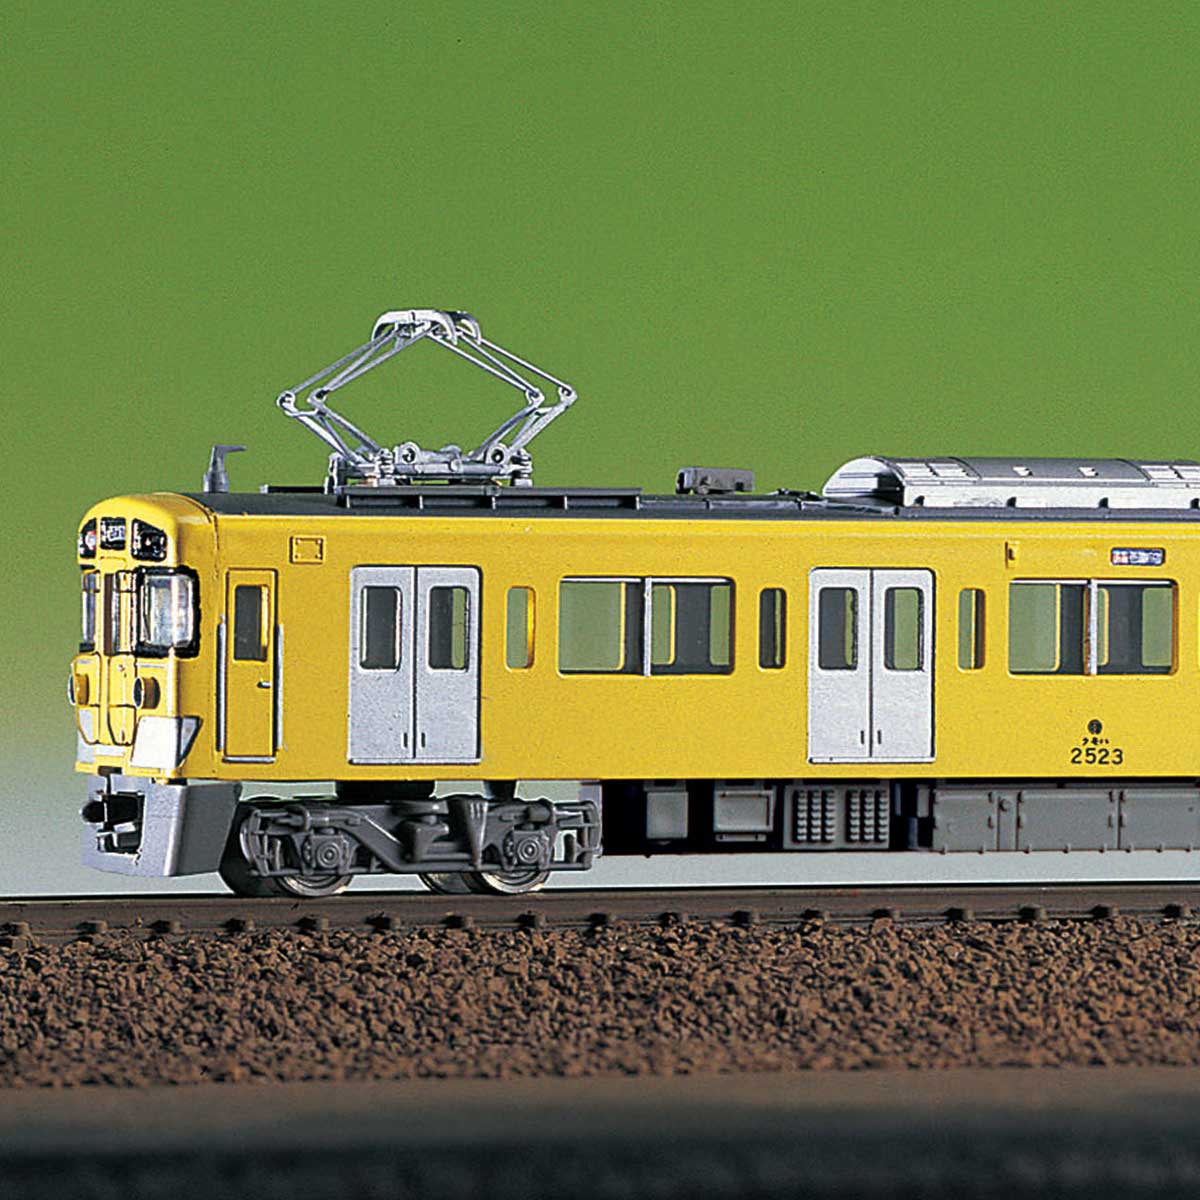 957 グリーンマックス 高松琴平電鉄1070形 2両編成セット 未塗装エコノミーキット Nゲージ 鉄道模型 